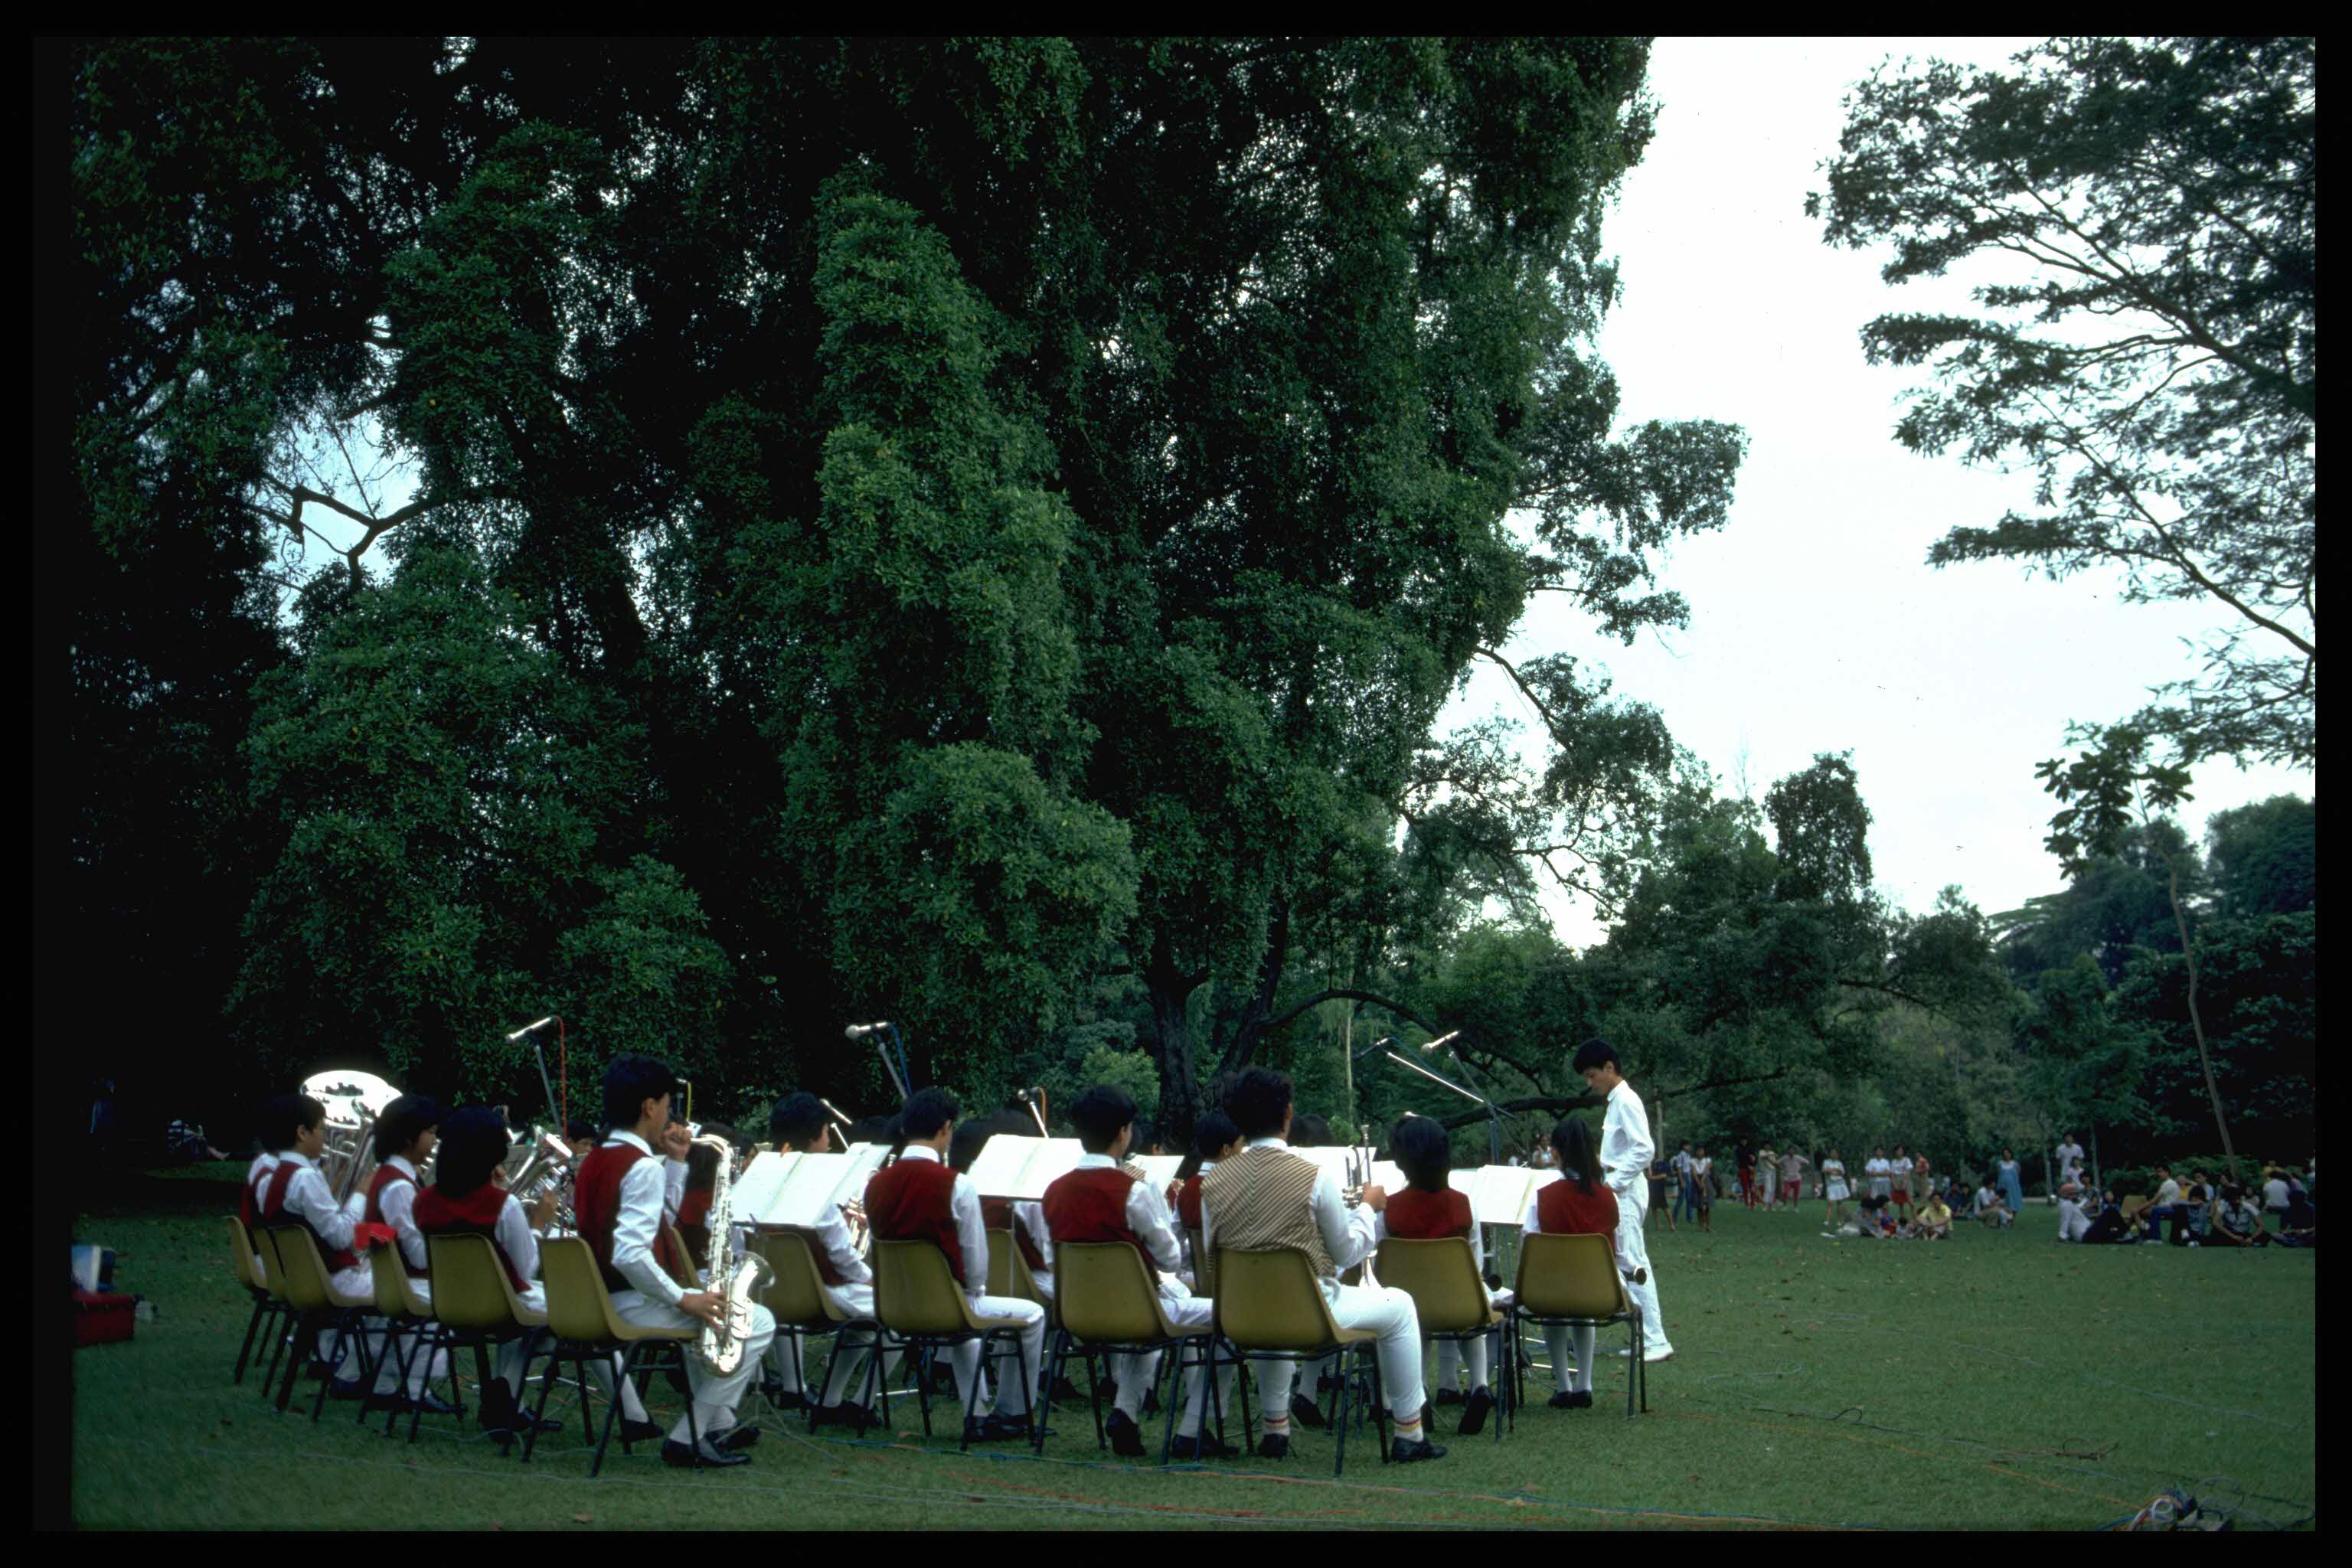 Brass band playing at Singapore Botanic Gardens, 1994